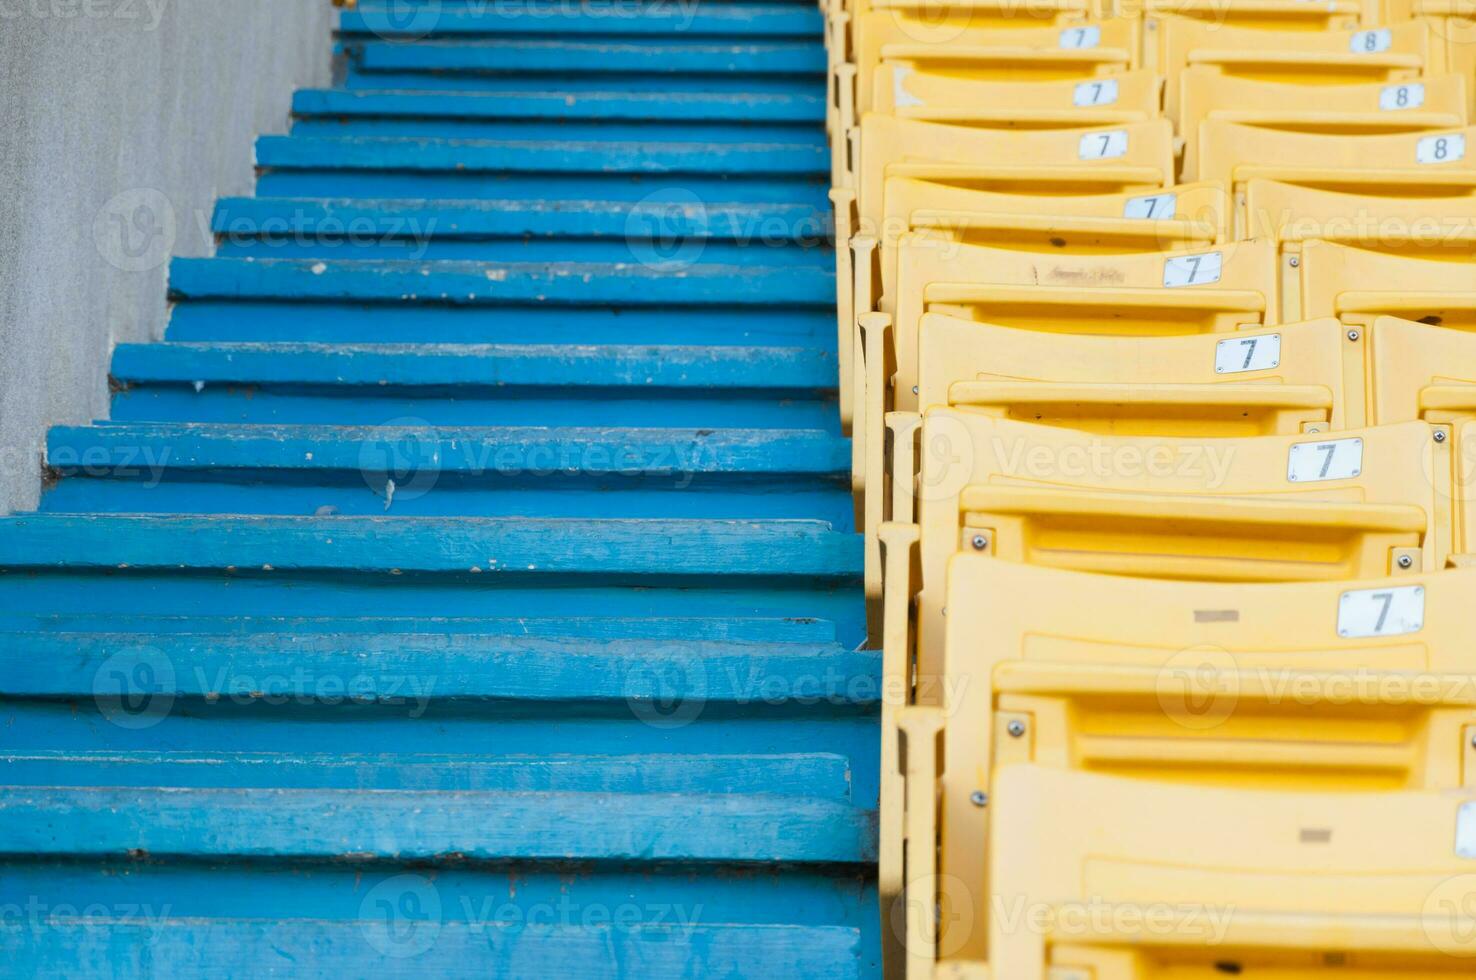 leeg geel stoelen Bij stadion, rijen loopbrug van stoel Aan een voetbal stadion foto